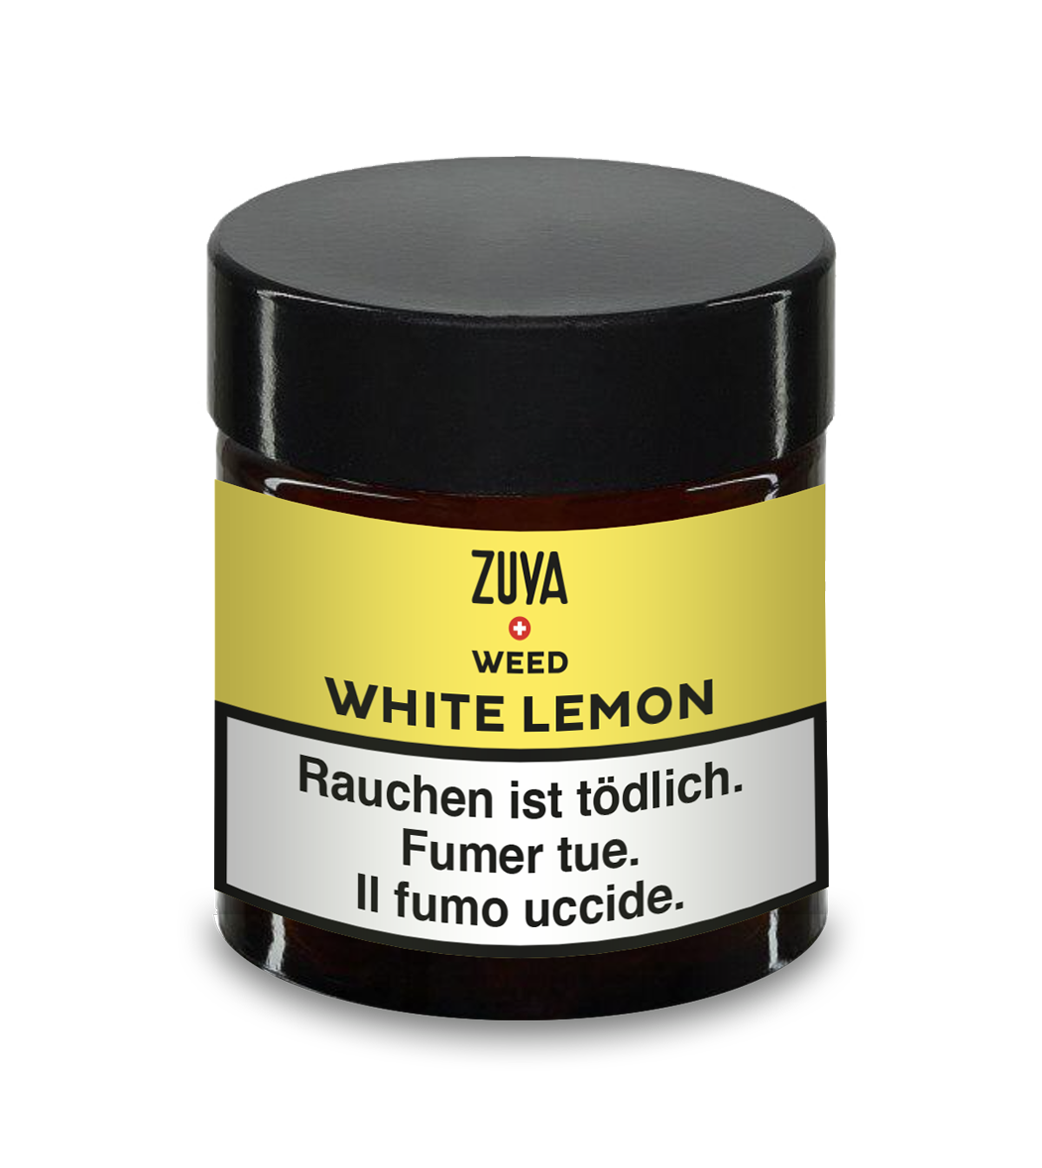 ZUYA Weed WHITE LEMON